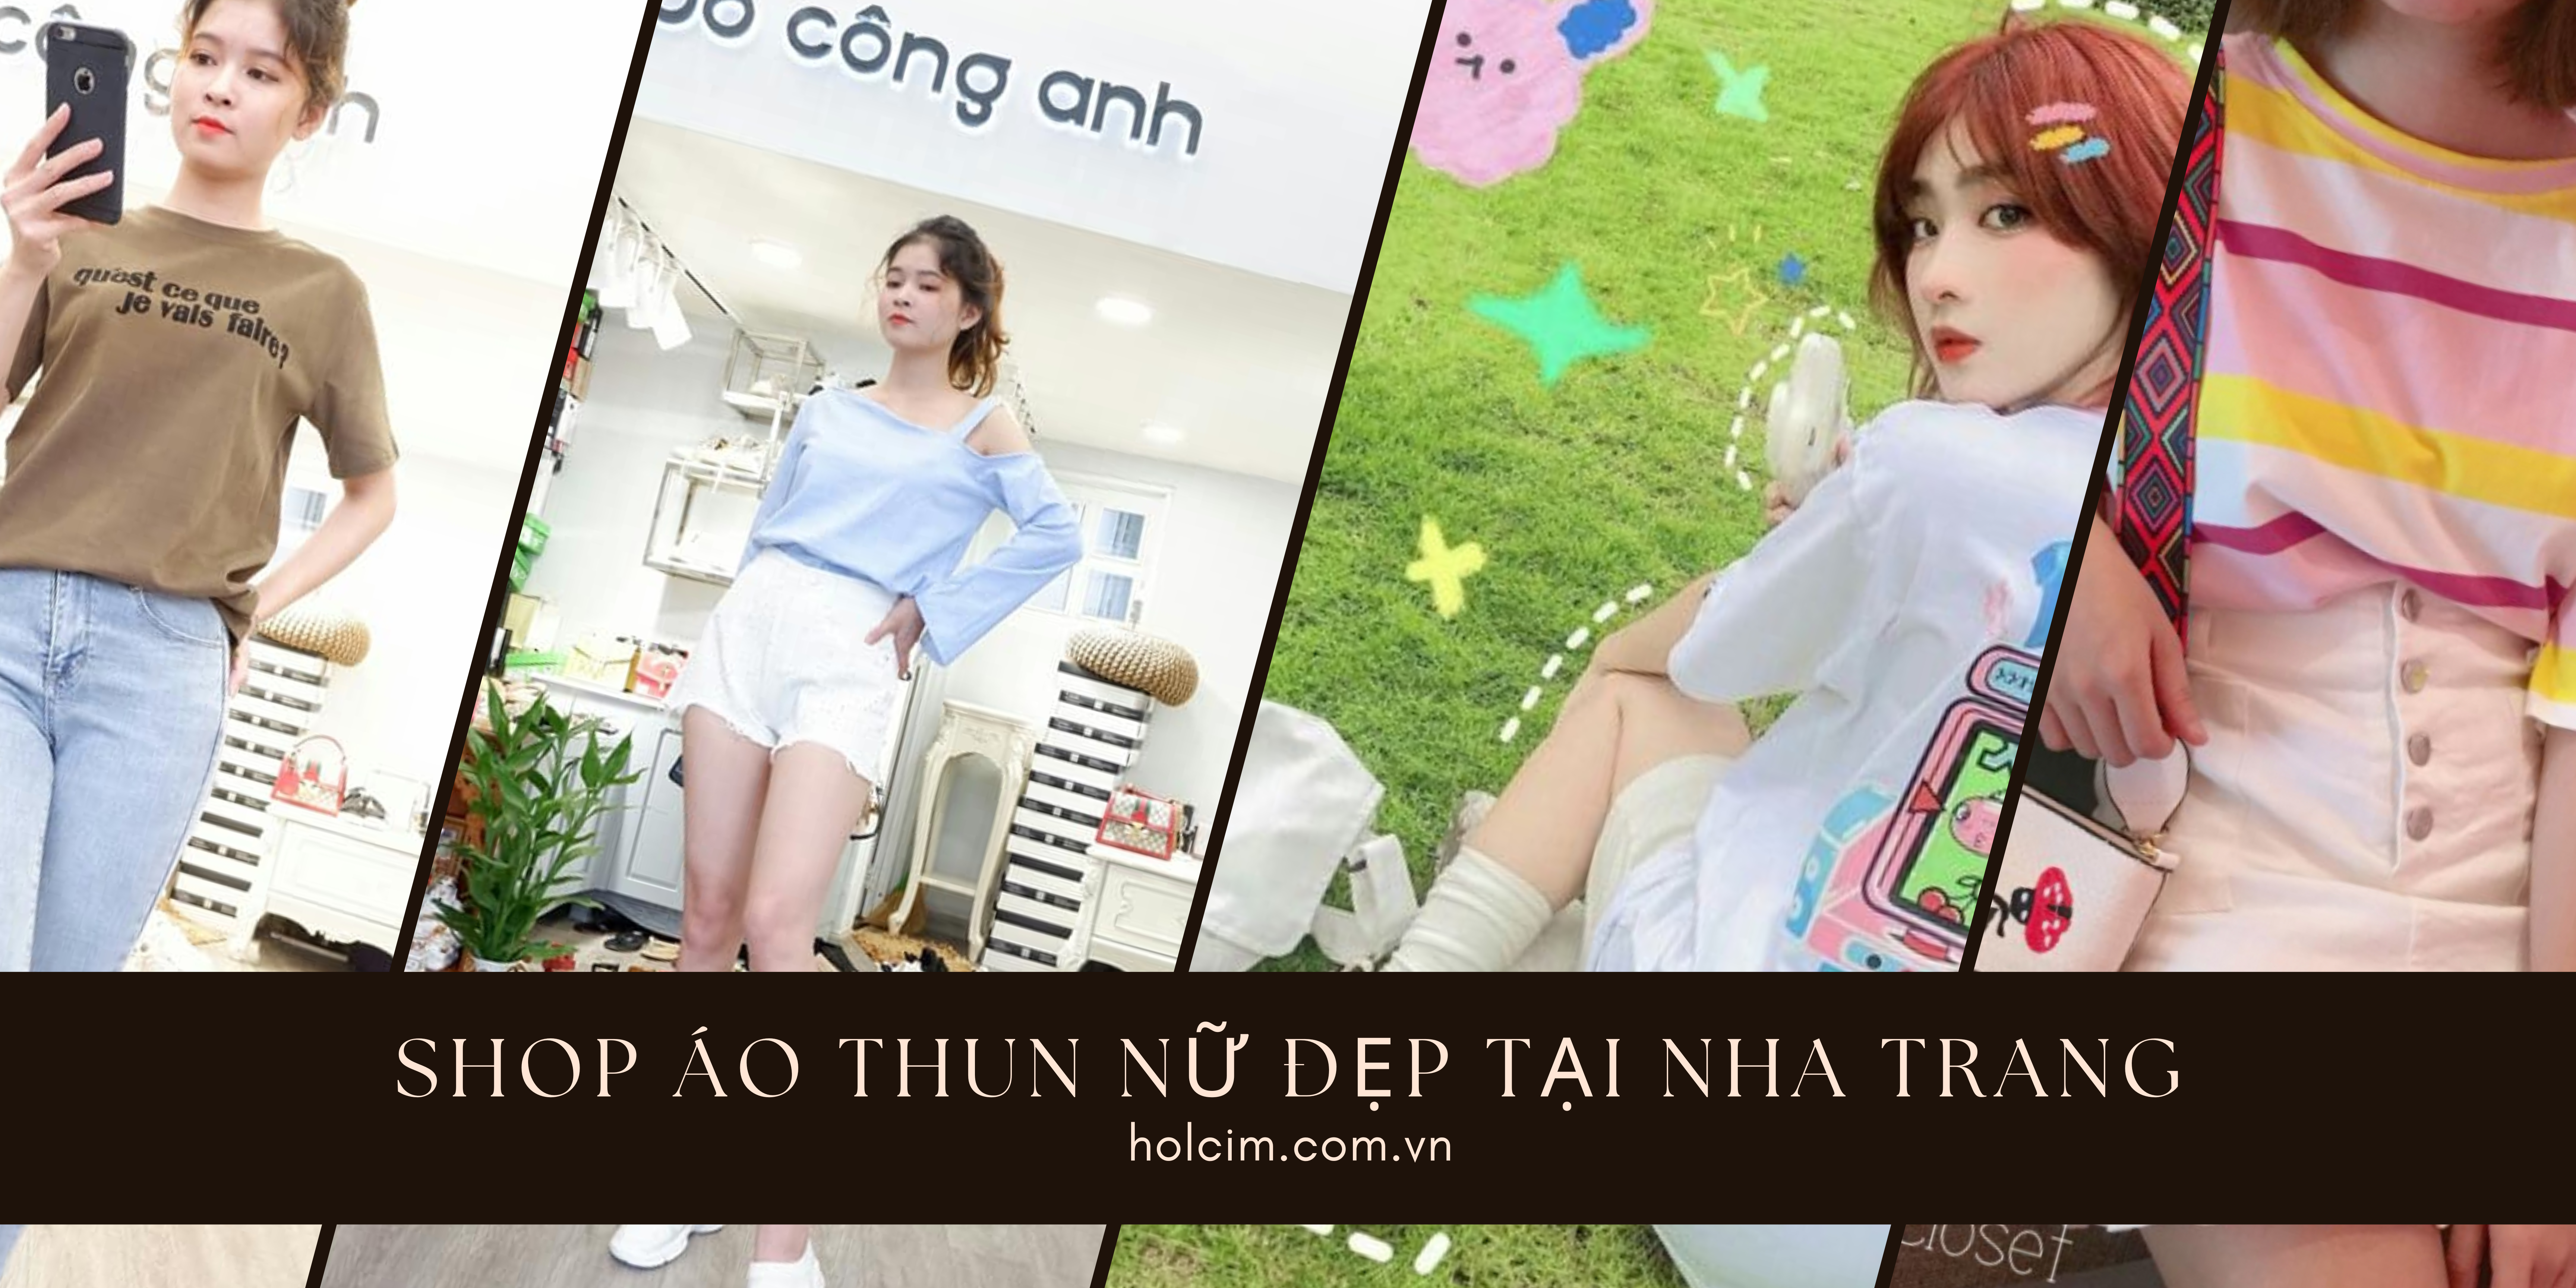 Top 8 shop bán áo thun nữ đẹp tại Nha Trang